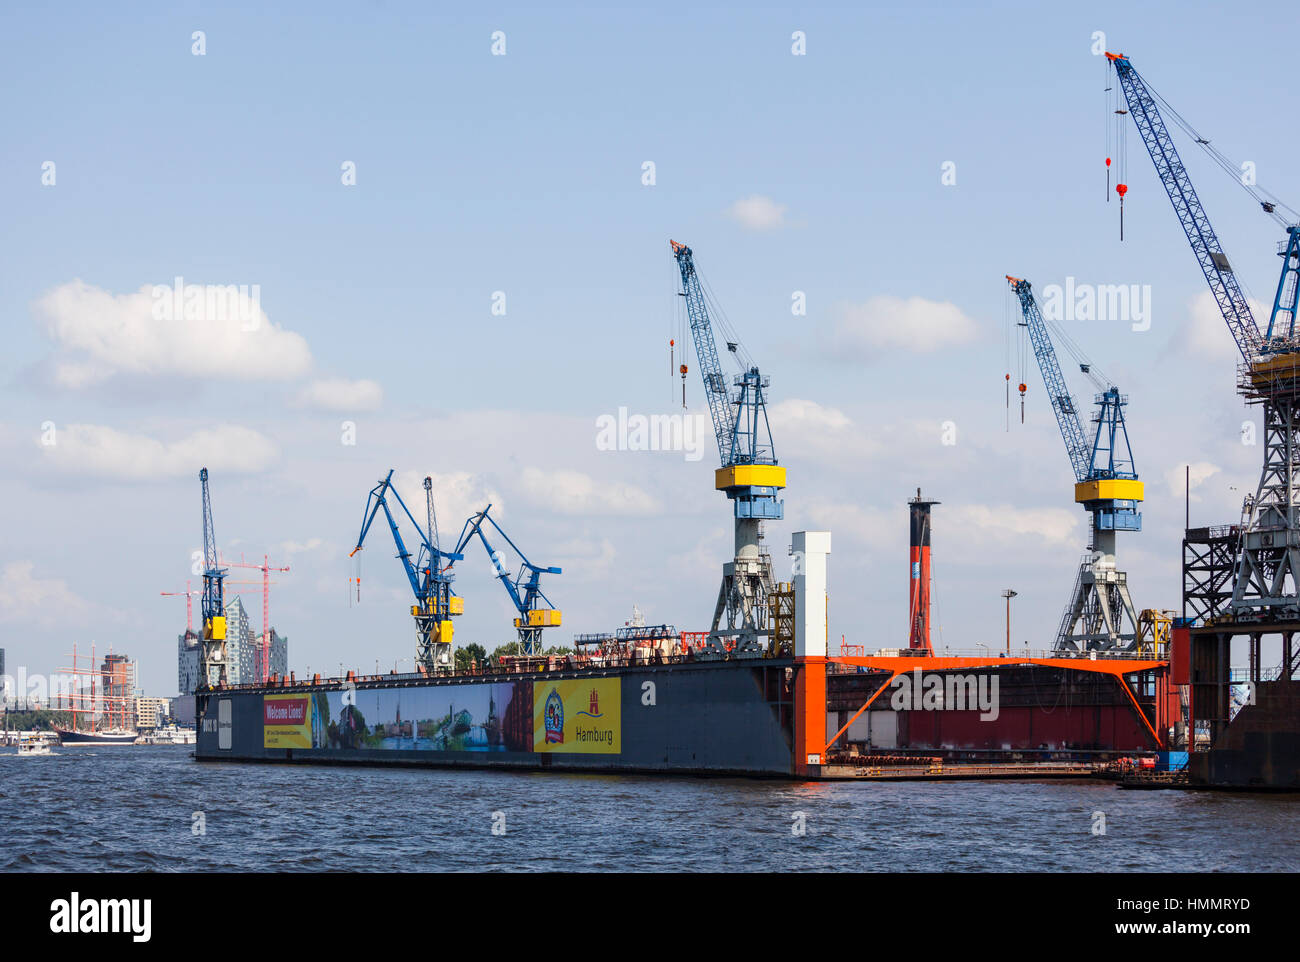 Hamburg, Deutschland - 5 Juli: Blohm und Voss Werft in Hamburg, Deutschland am 5. Juli 2013 Stockfoto